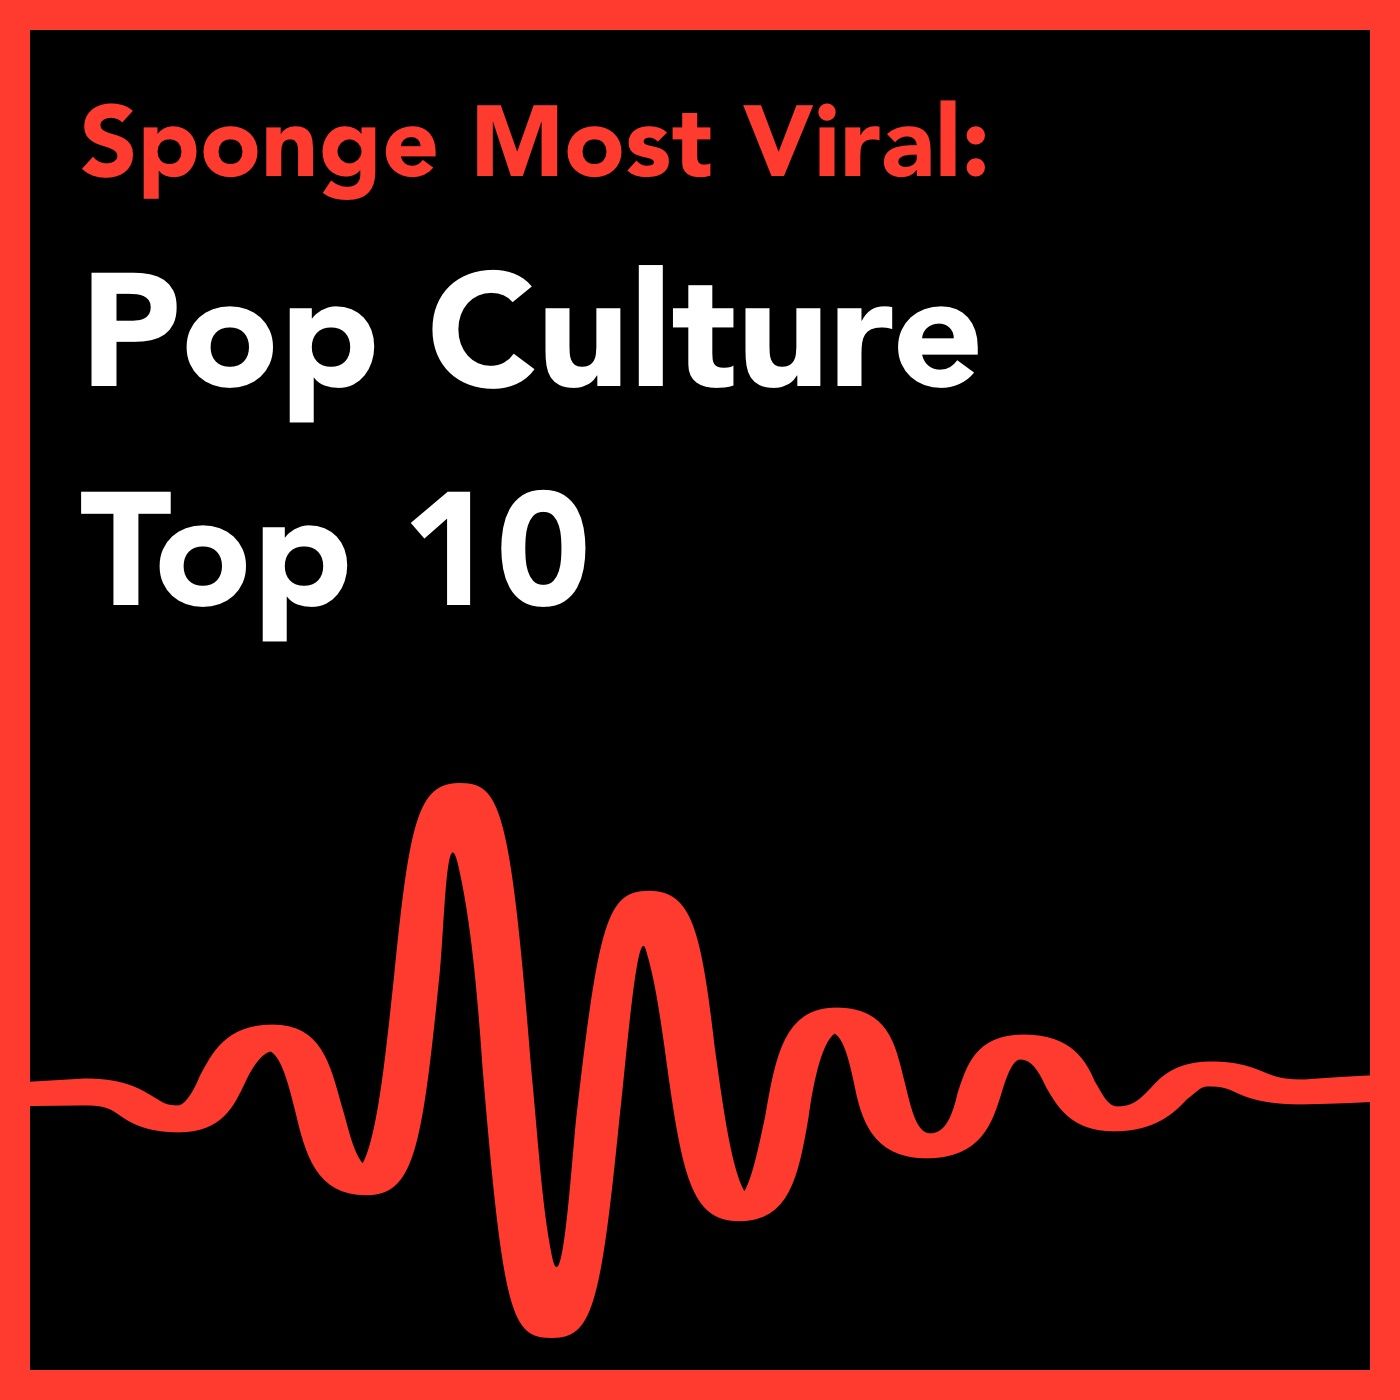 Pop Culture: Top 10 Most Viral